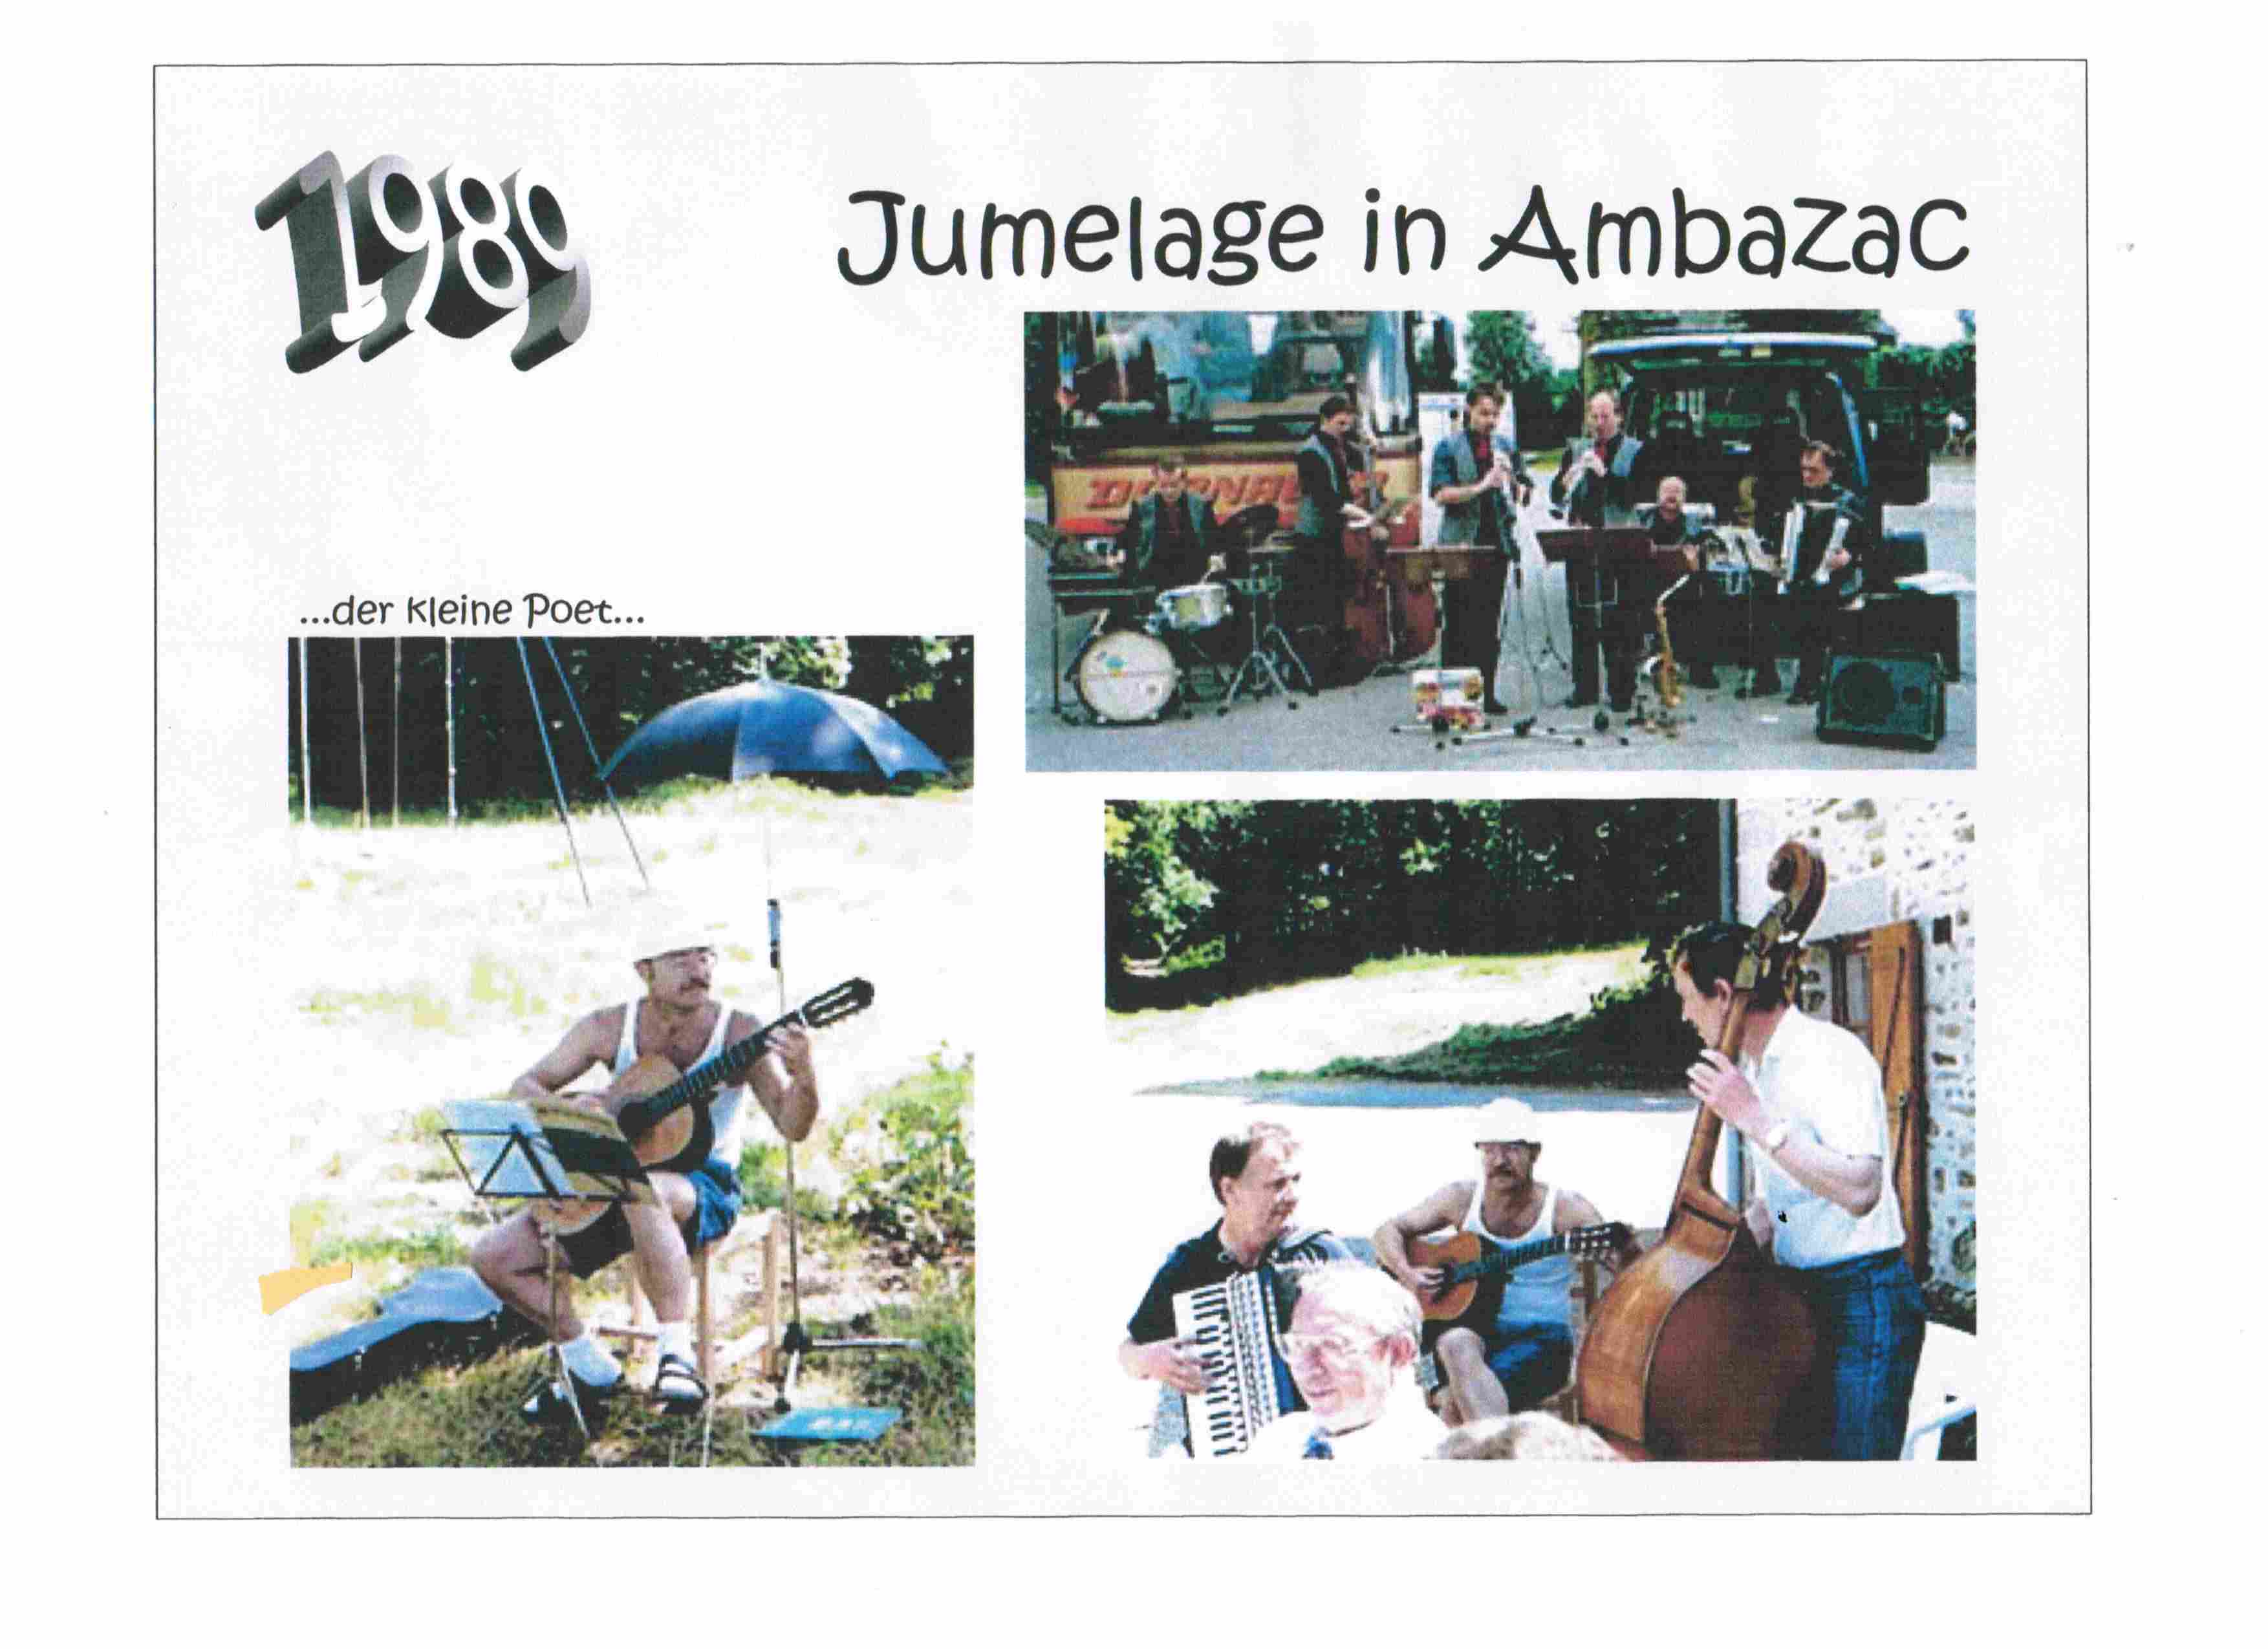 1989 Jumelage in Ambazac